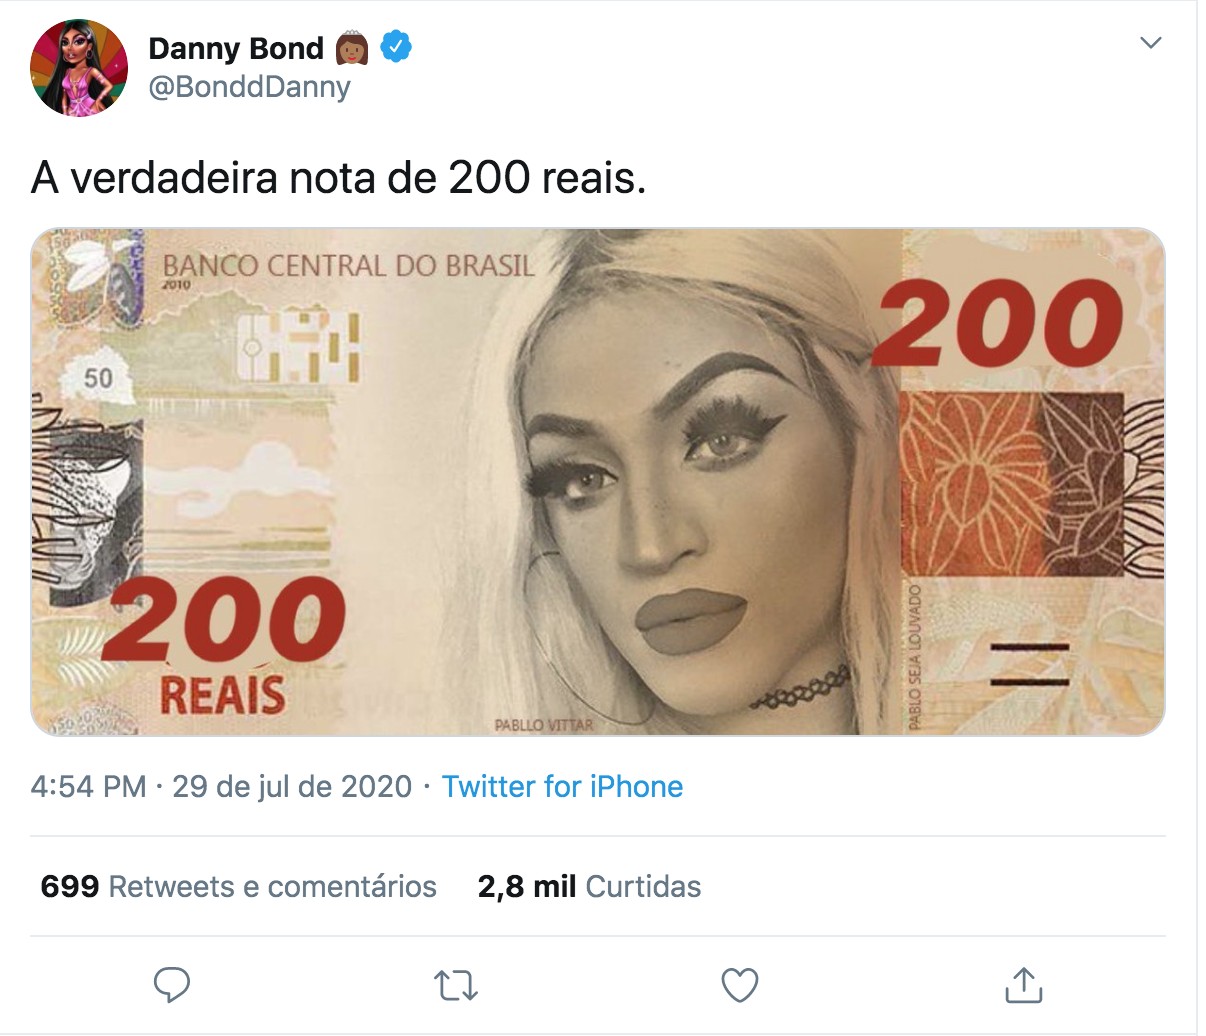 Cédula anunciada pelo Banco Central já virou meme na web (Foto: Reprodução)